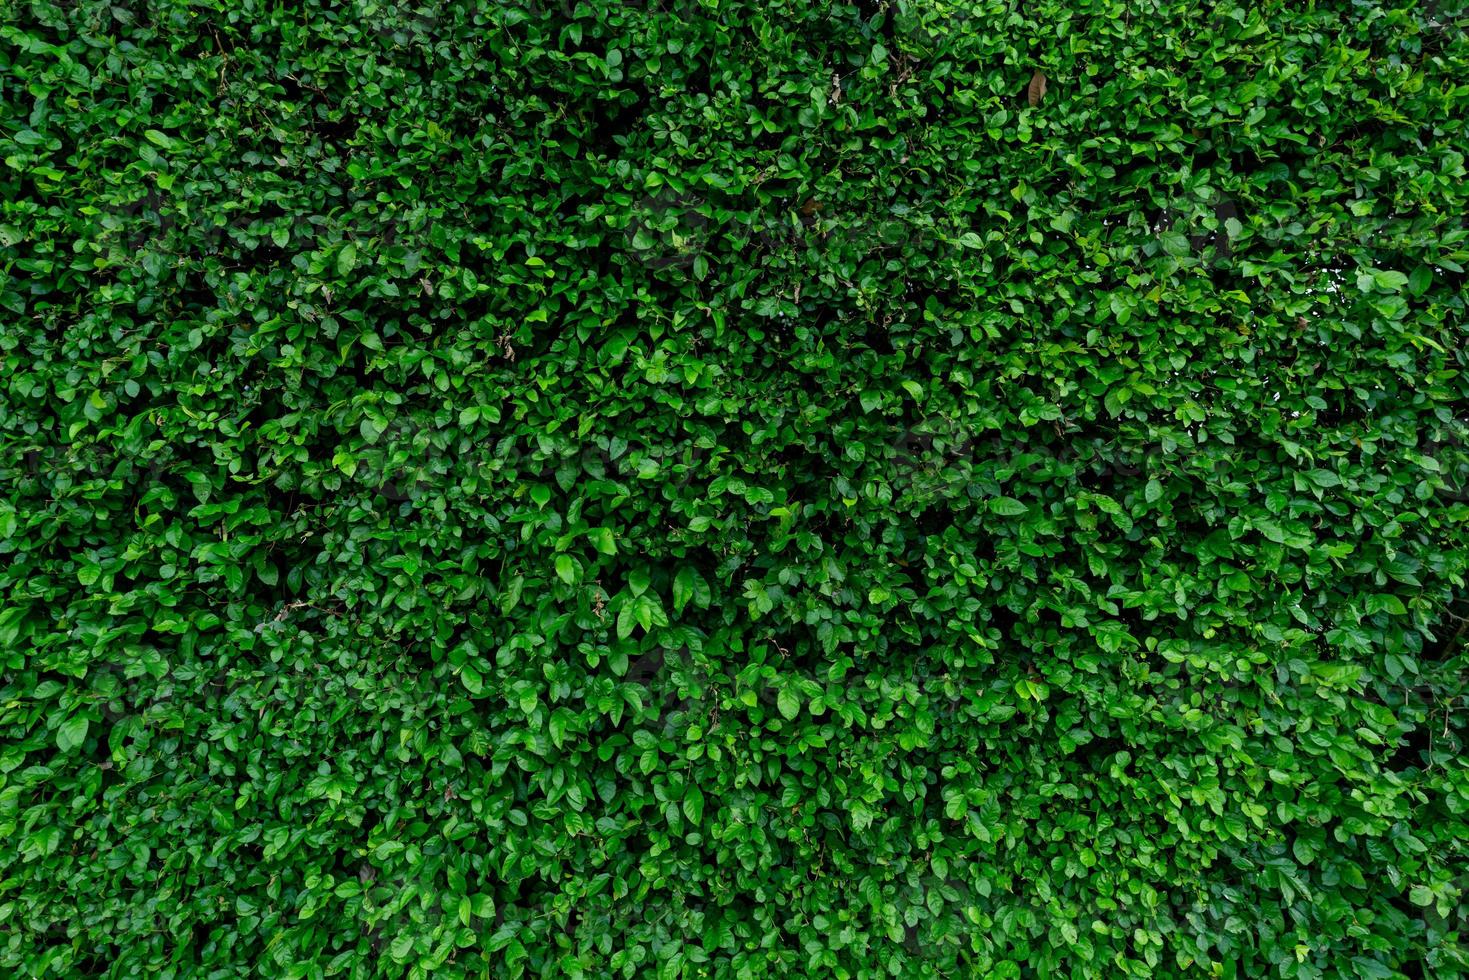 plantas de cobertura de hoja perenne de primer plano. pequeñas hojas verdes en el fondo de textura de pared de cobertura. pared de seto de hoja perenne ecológica. planta ornamental en el jardín del patio trasero. muchas hojas reducen el polvo en el aire. telón de fondo natural. foto